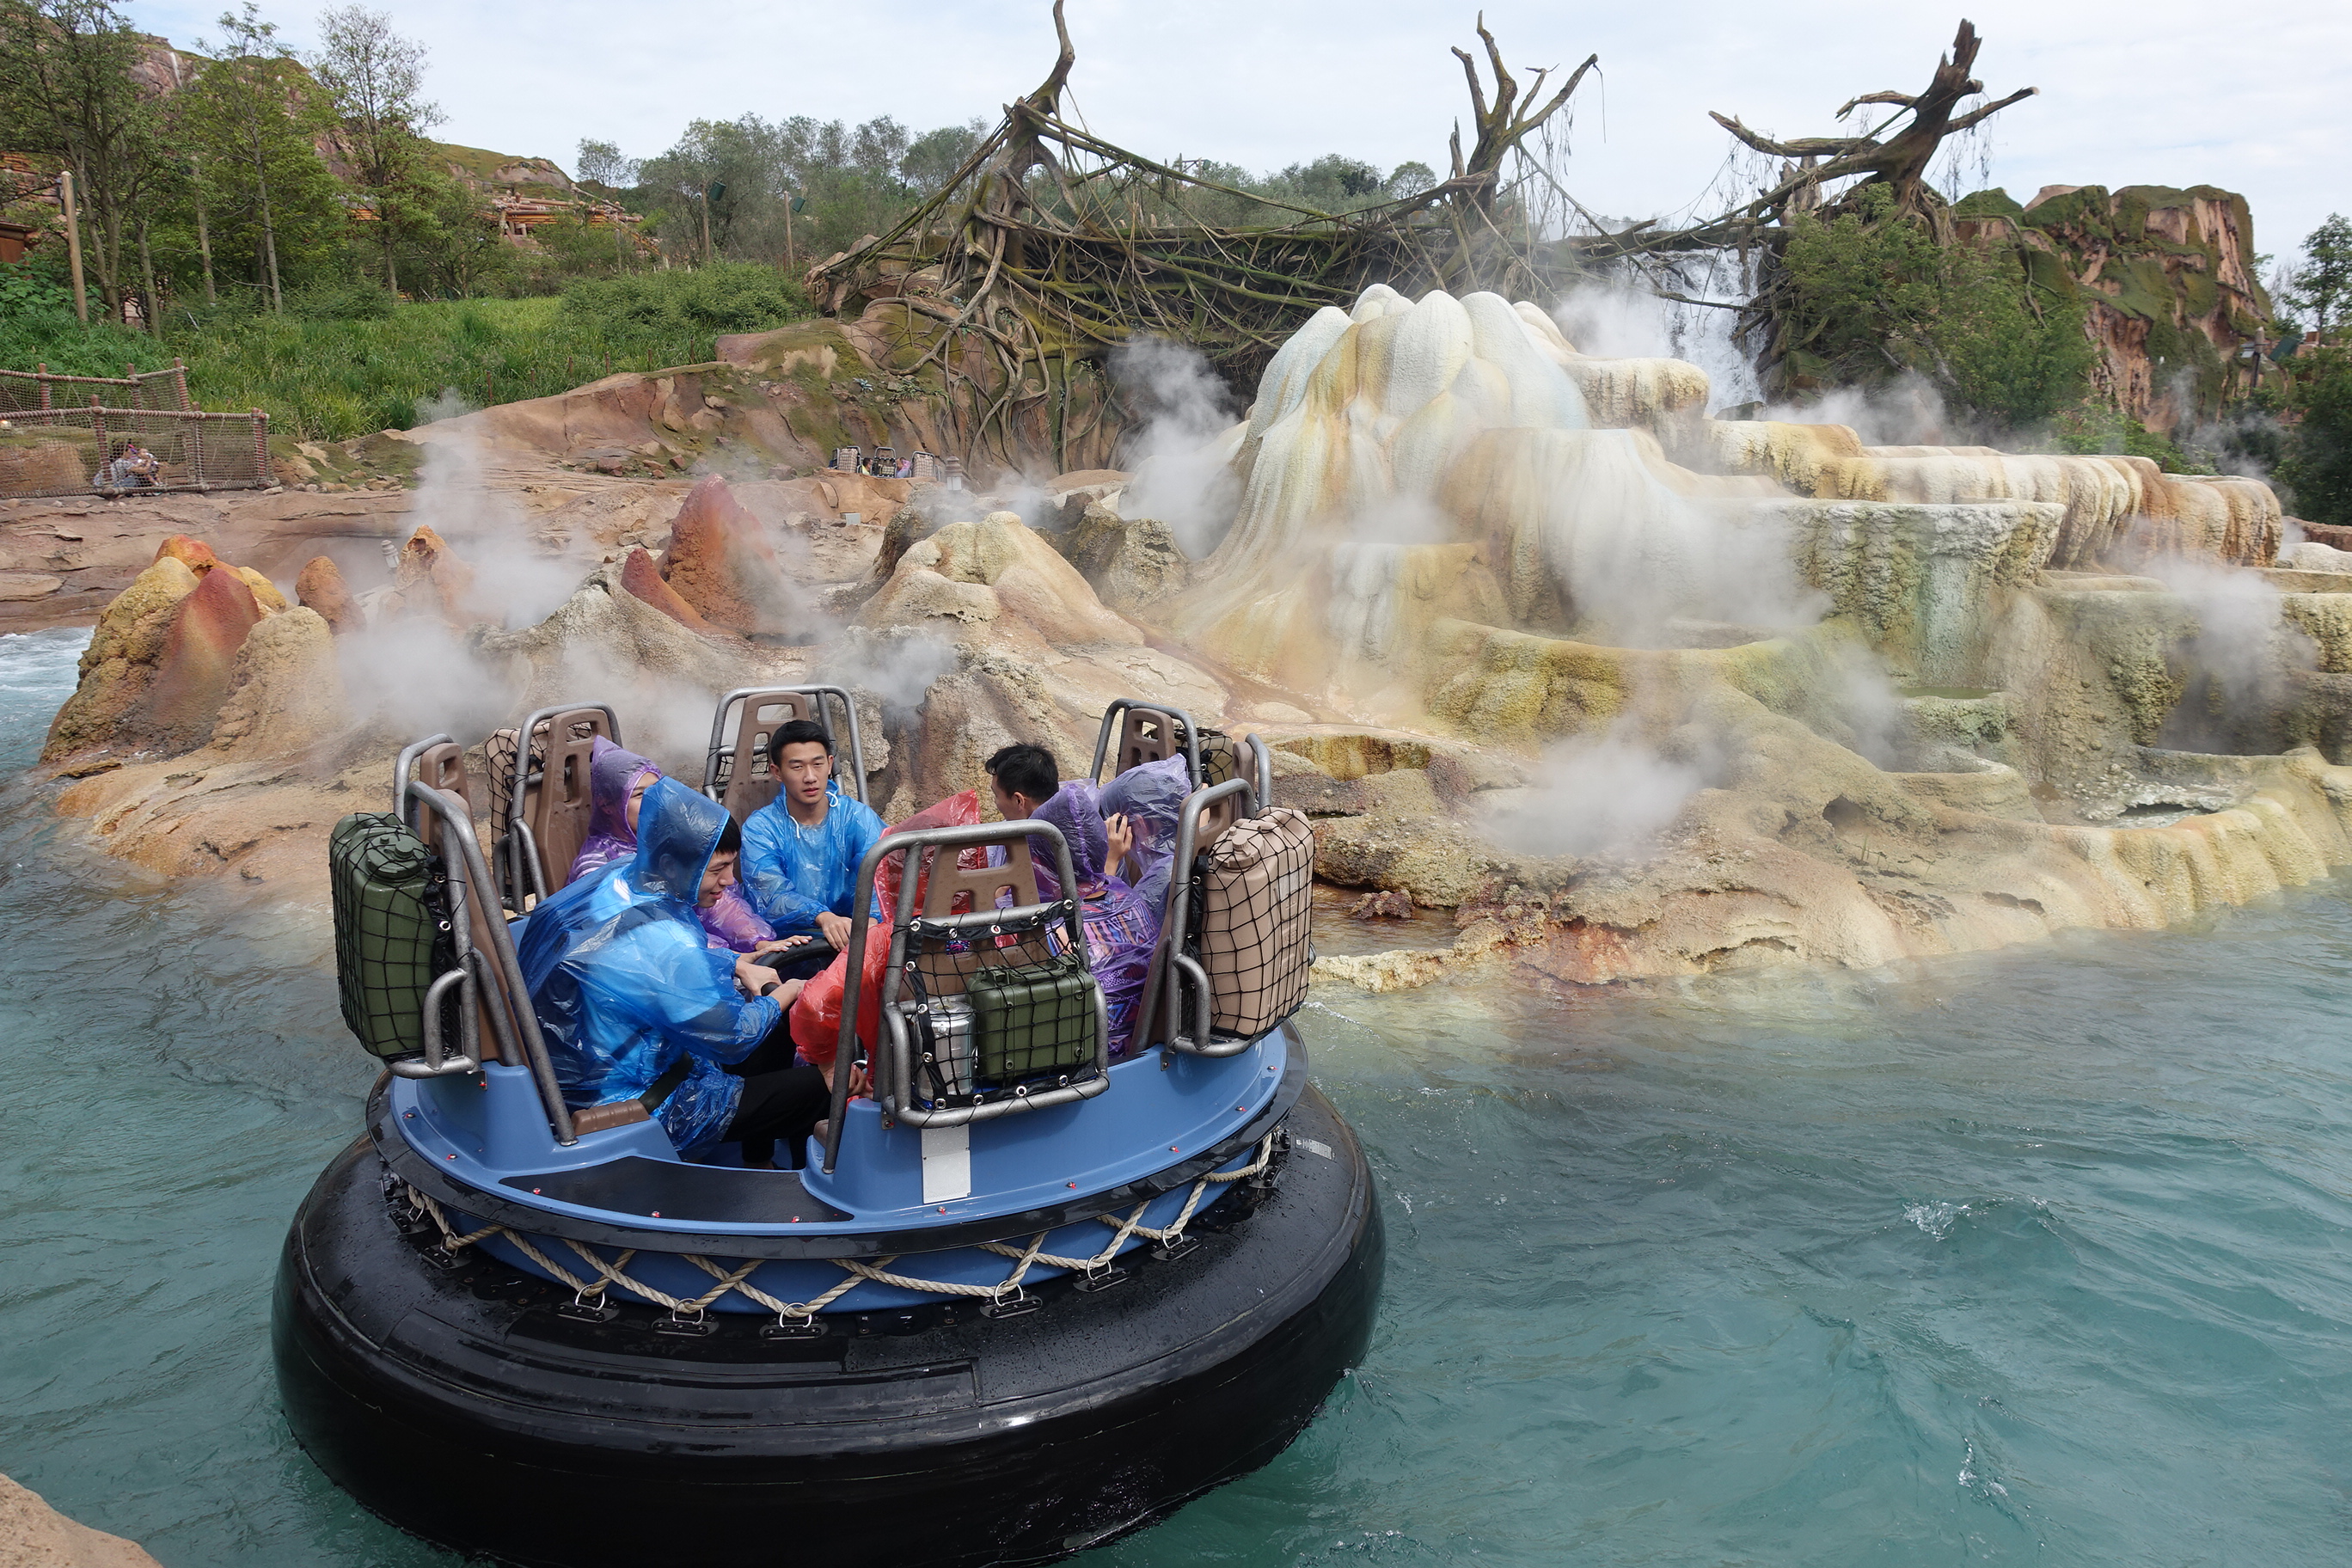 Roarin rapids es una de las atracciones más emocionantes de Shanghai Disneyland